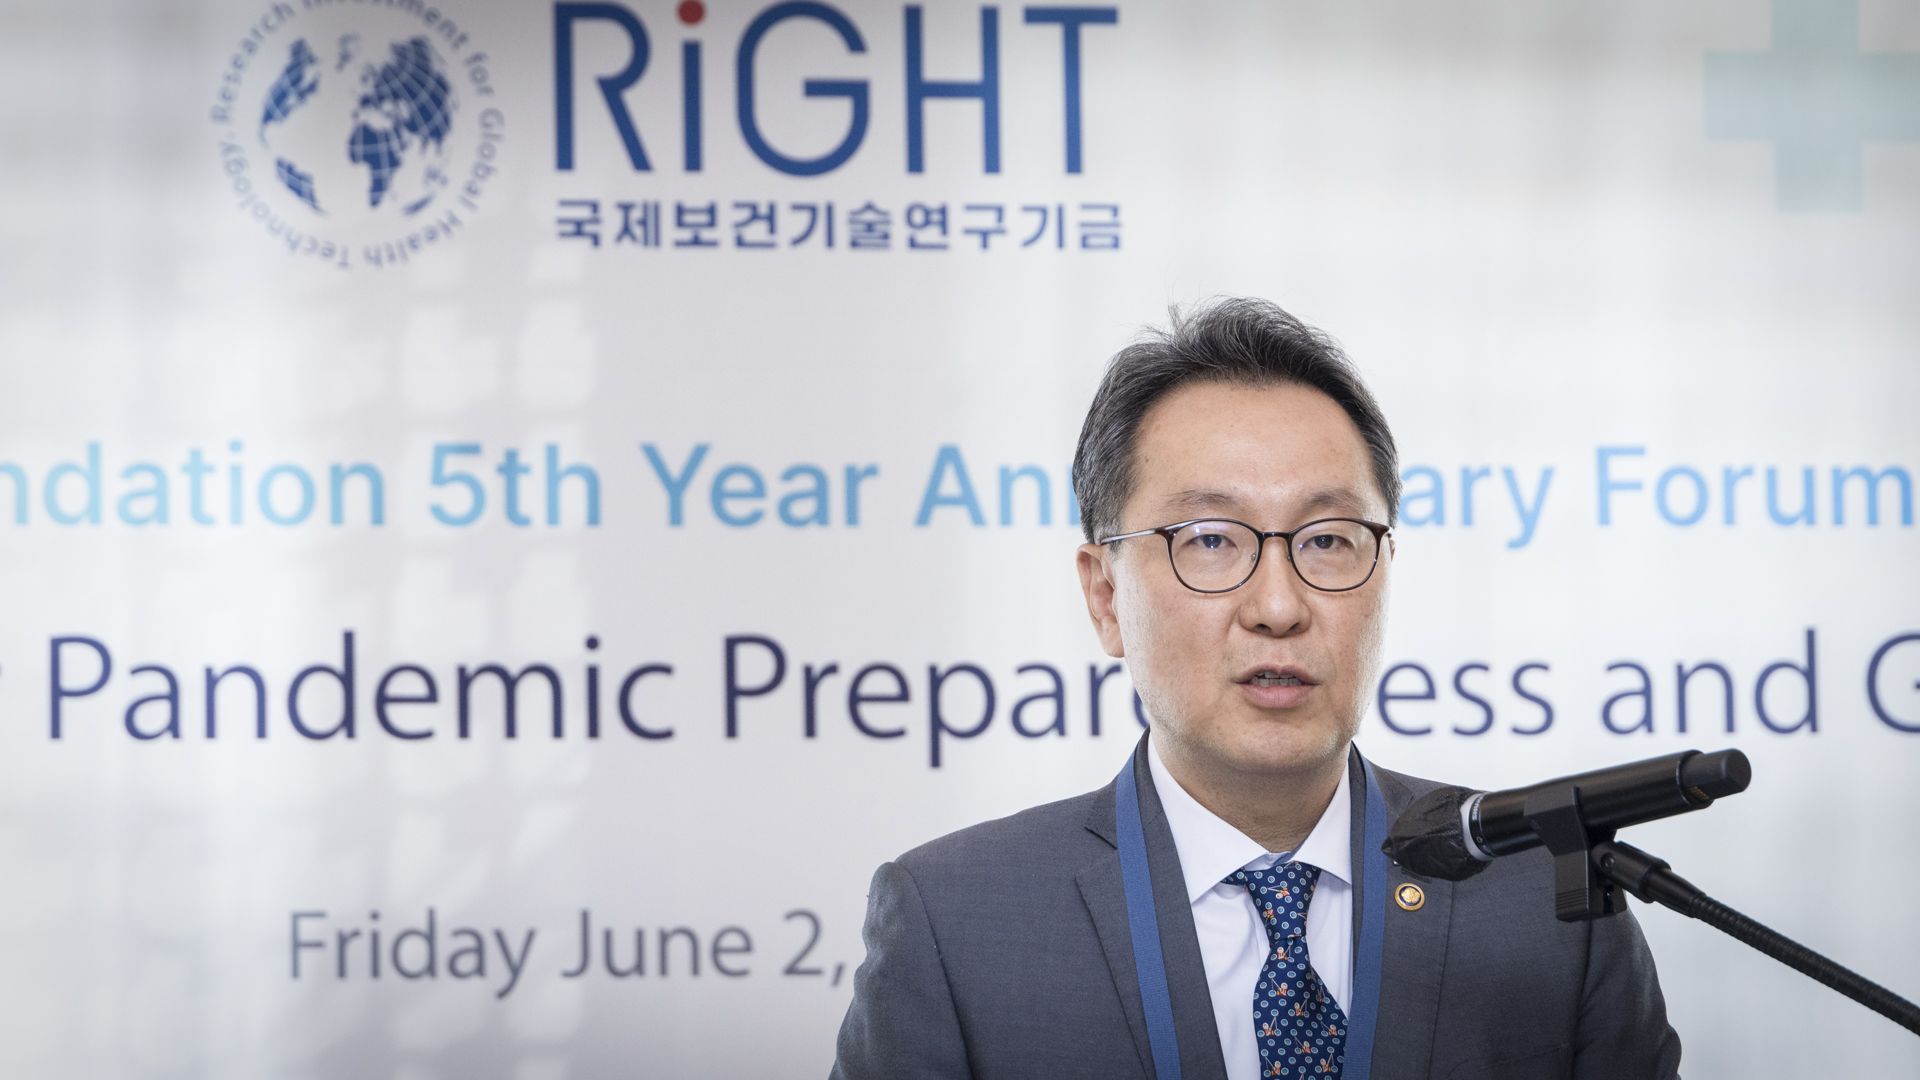 국제보건기술연구기금(RIGHT) 재단 설립 5주년 기념행사 개최 사진14